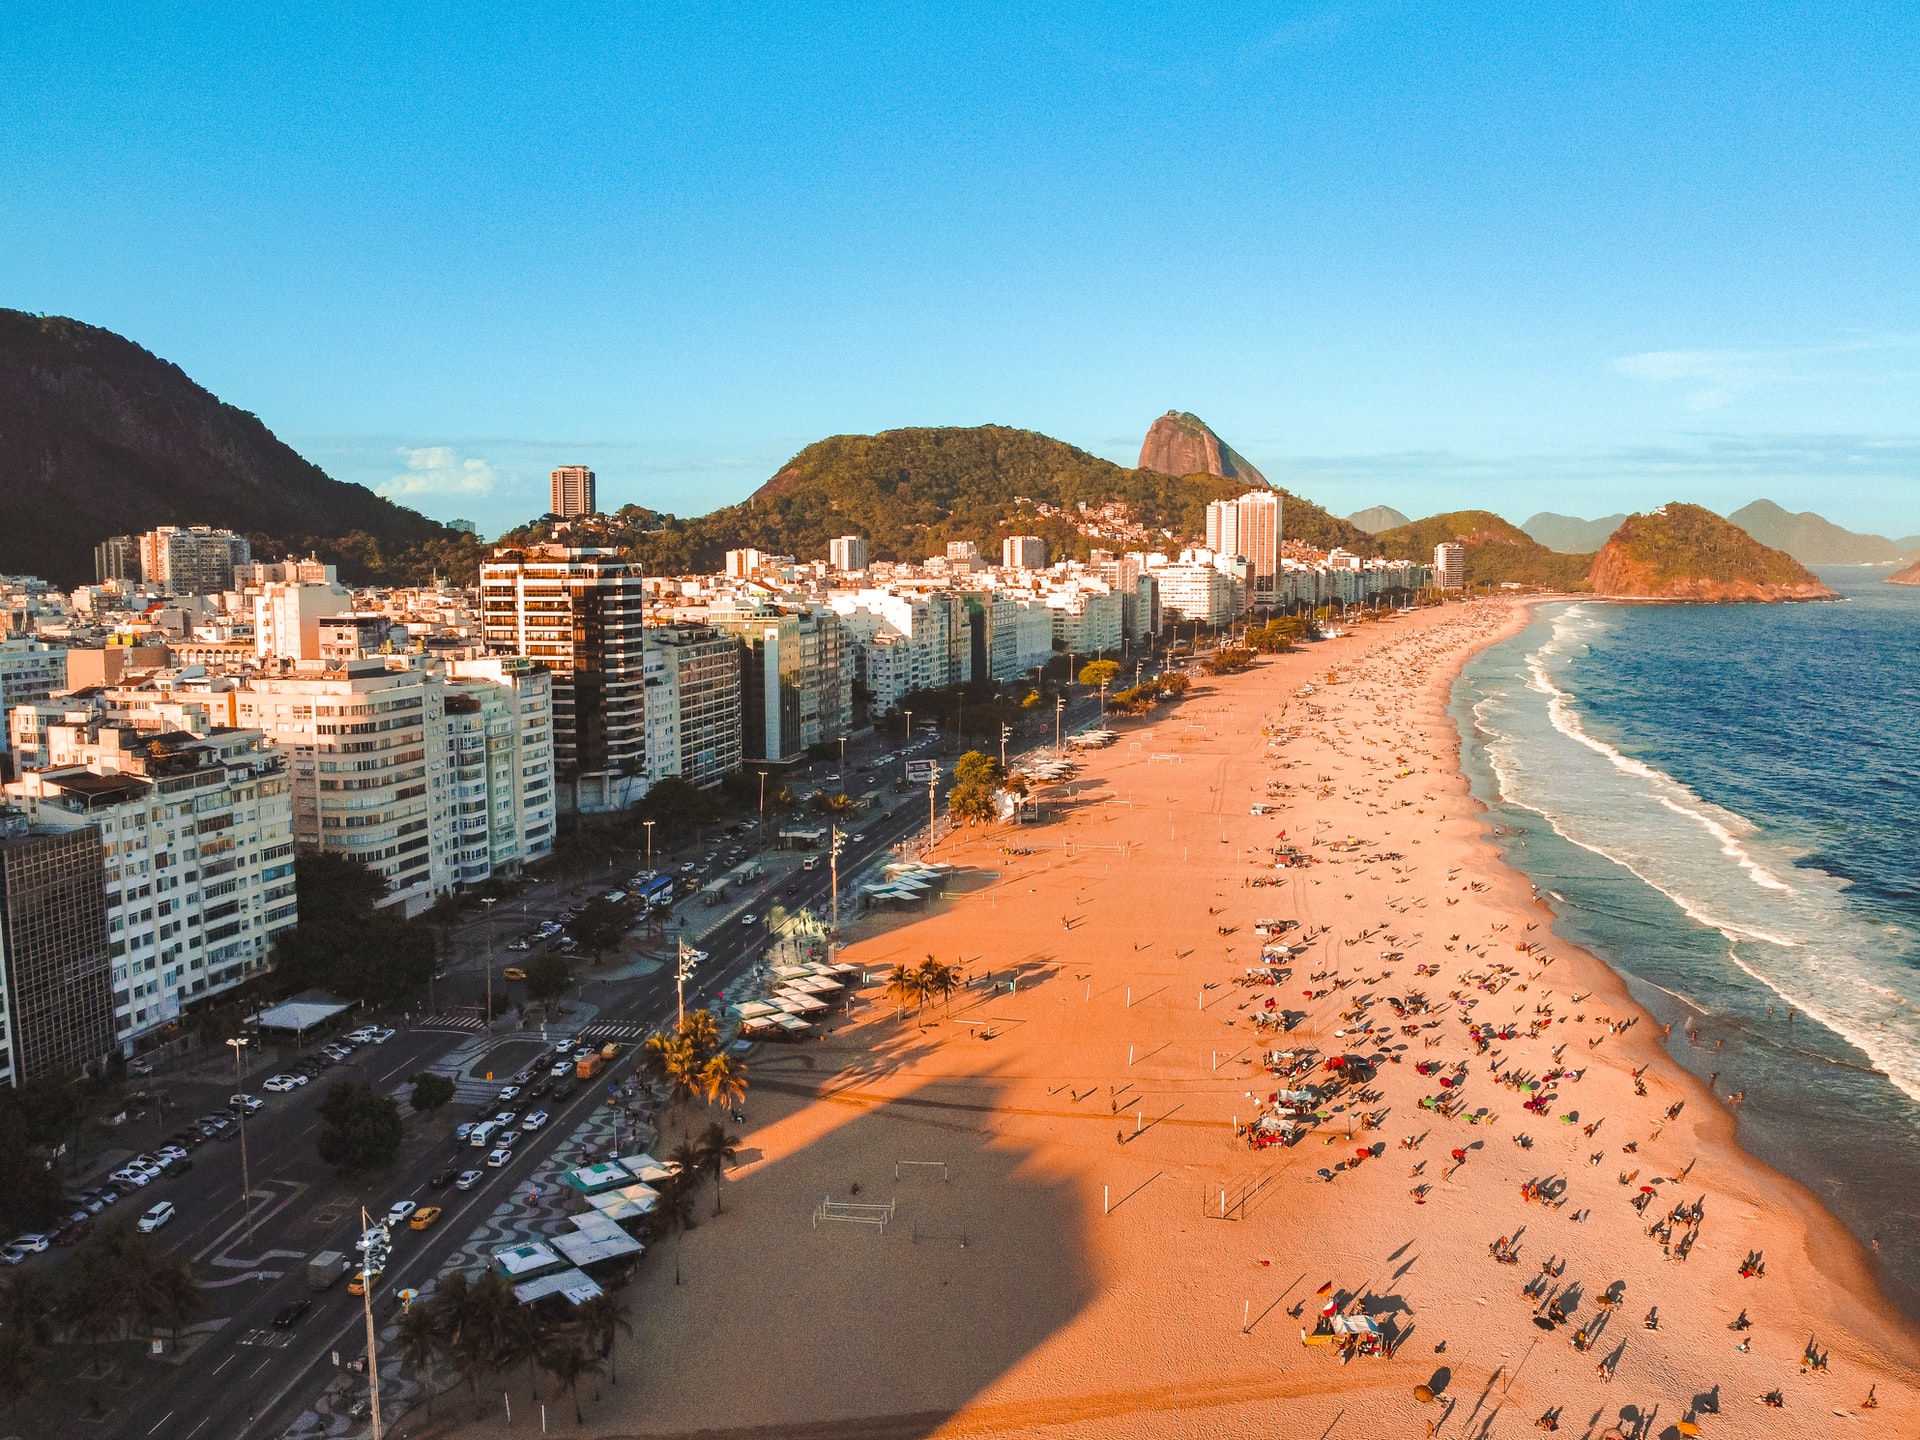 Apartamento na praia: imagem da orla da praia de Copacabana em um fim de tarde no Rio de Janeiro